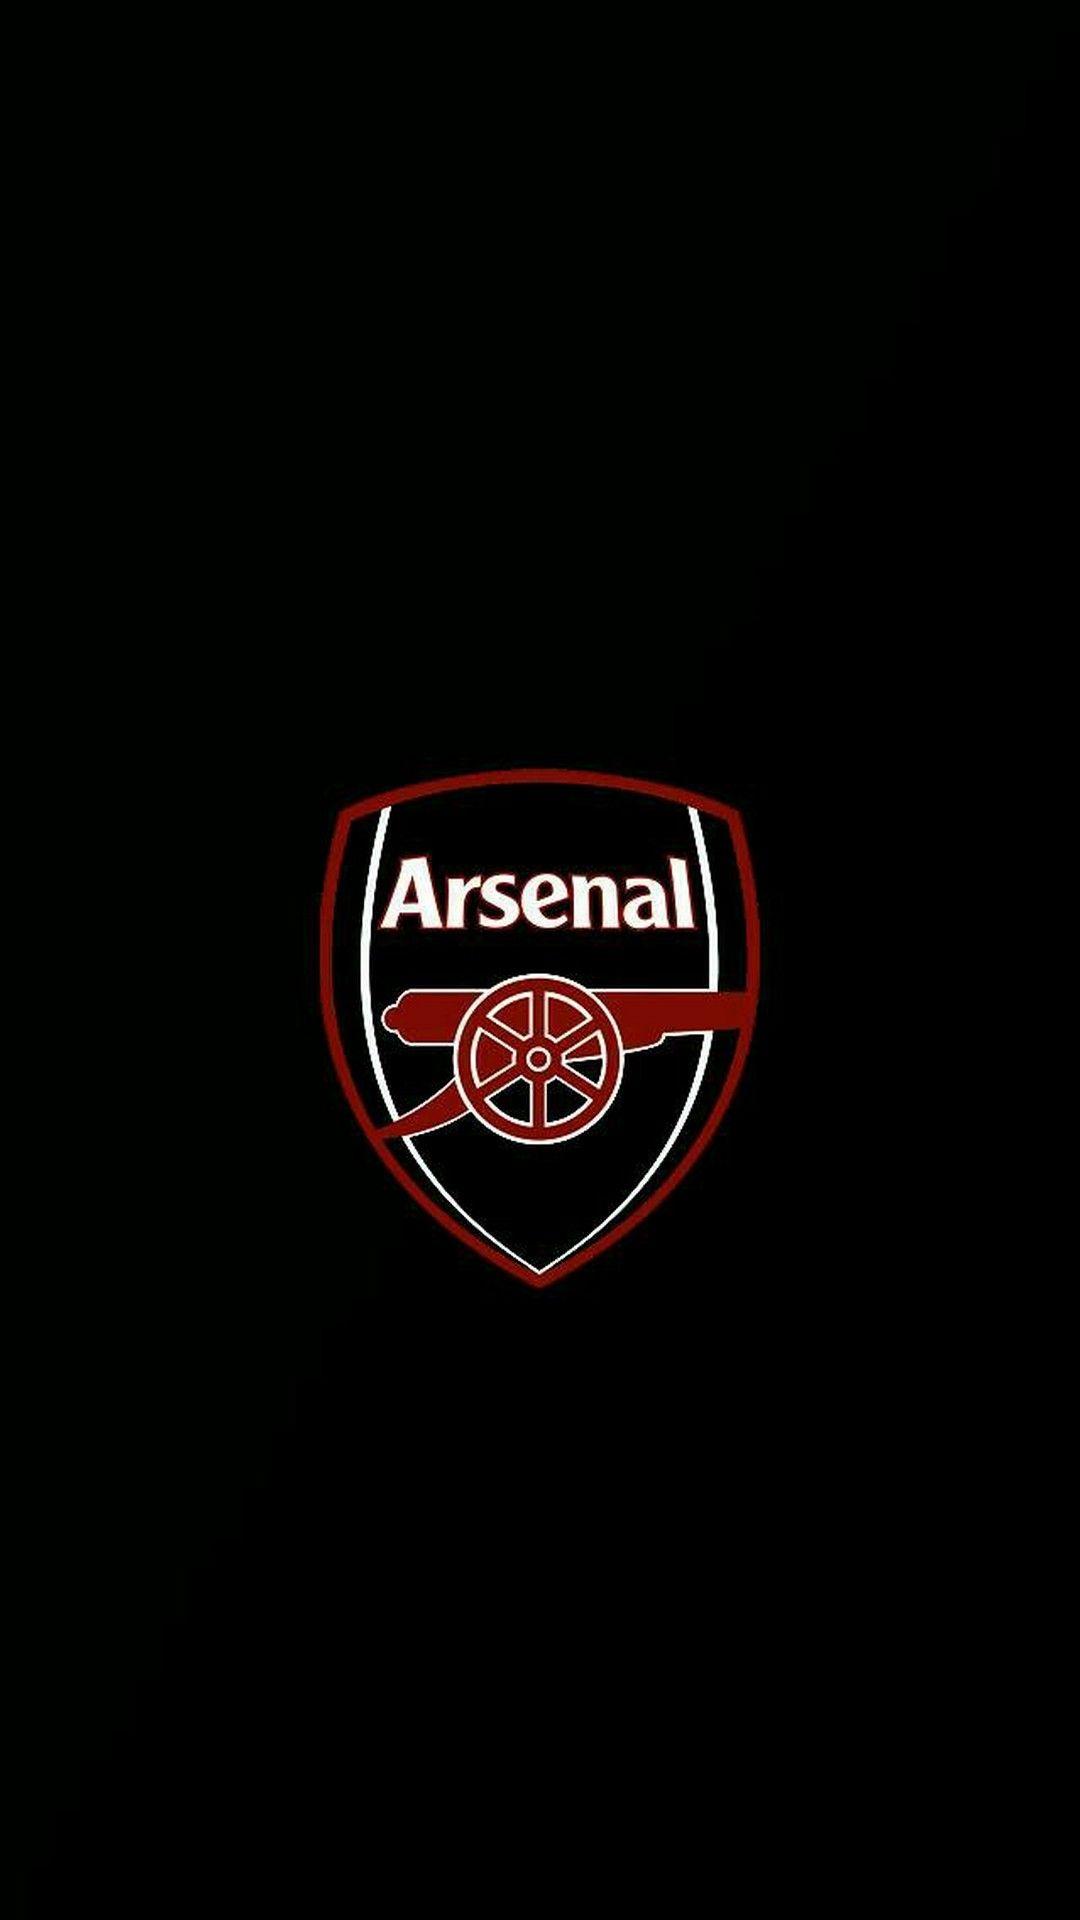 Arsenal Wallpaper Free Arsenal Background